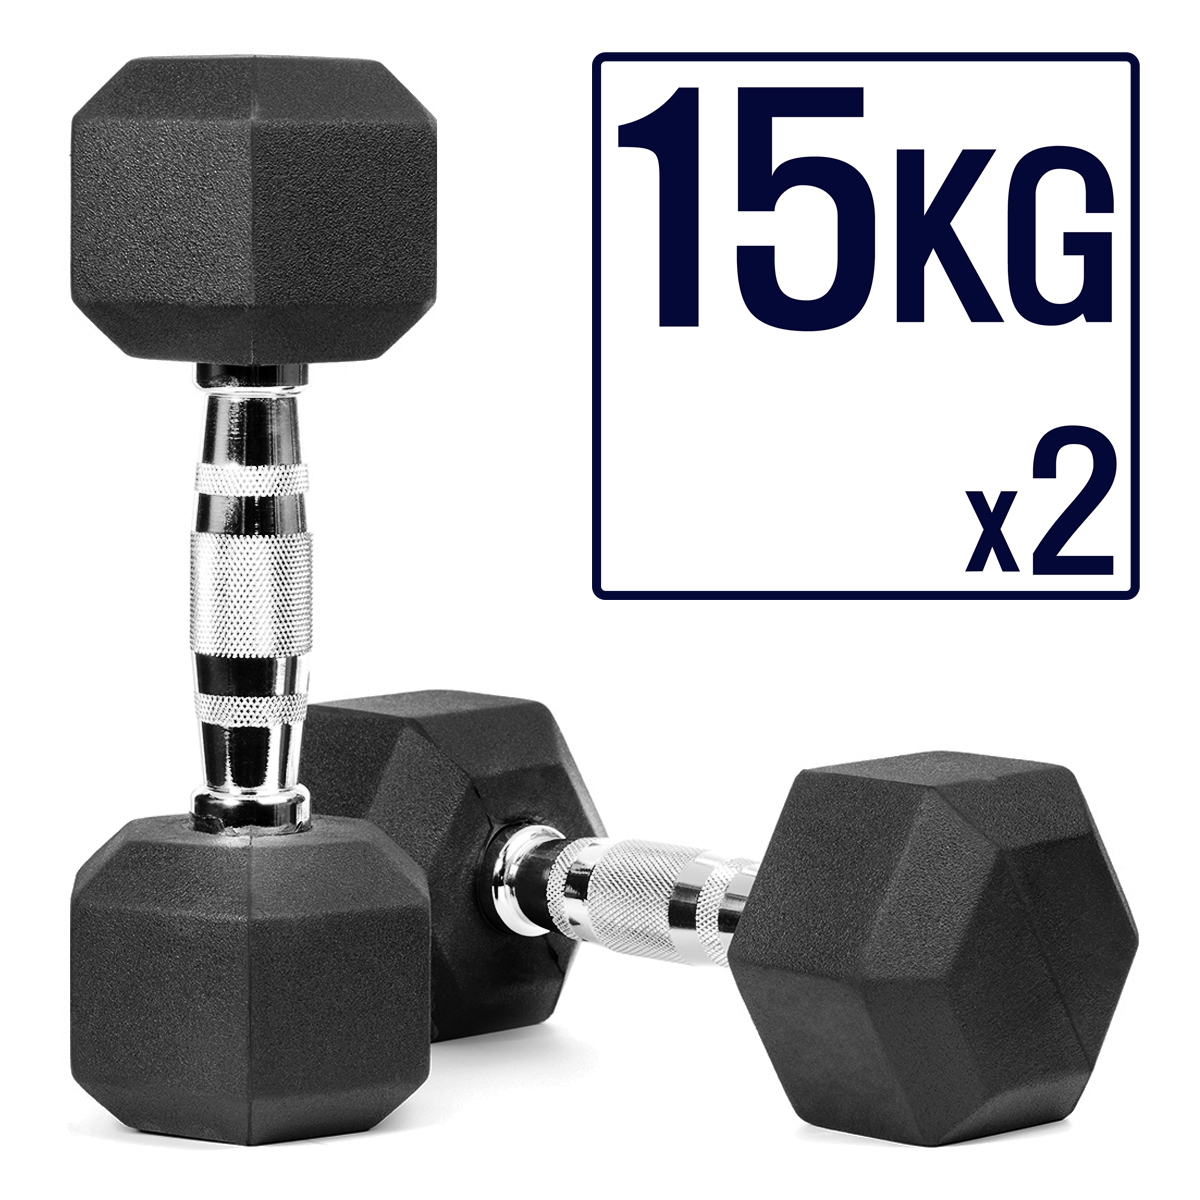 Basics Rubber Encased Hex Dumbbell Cross-Training,Weight Loss Strength Training